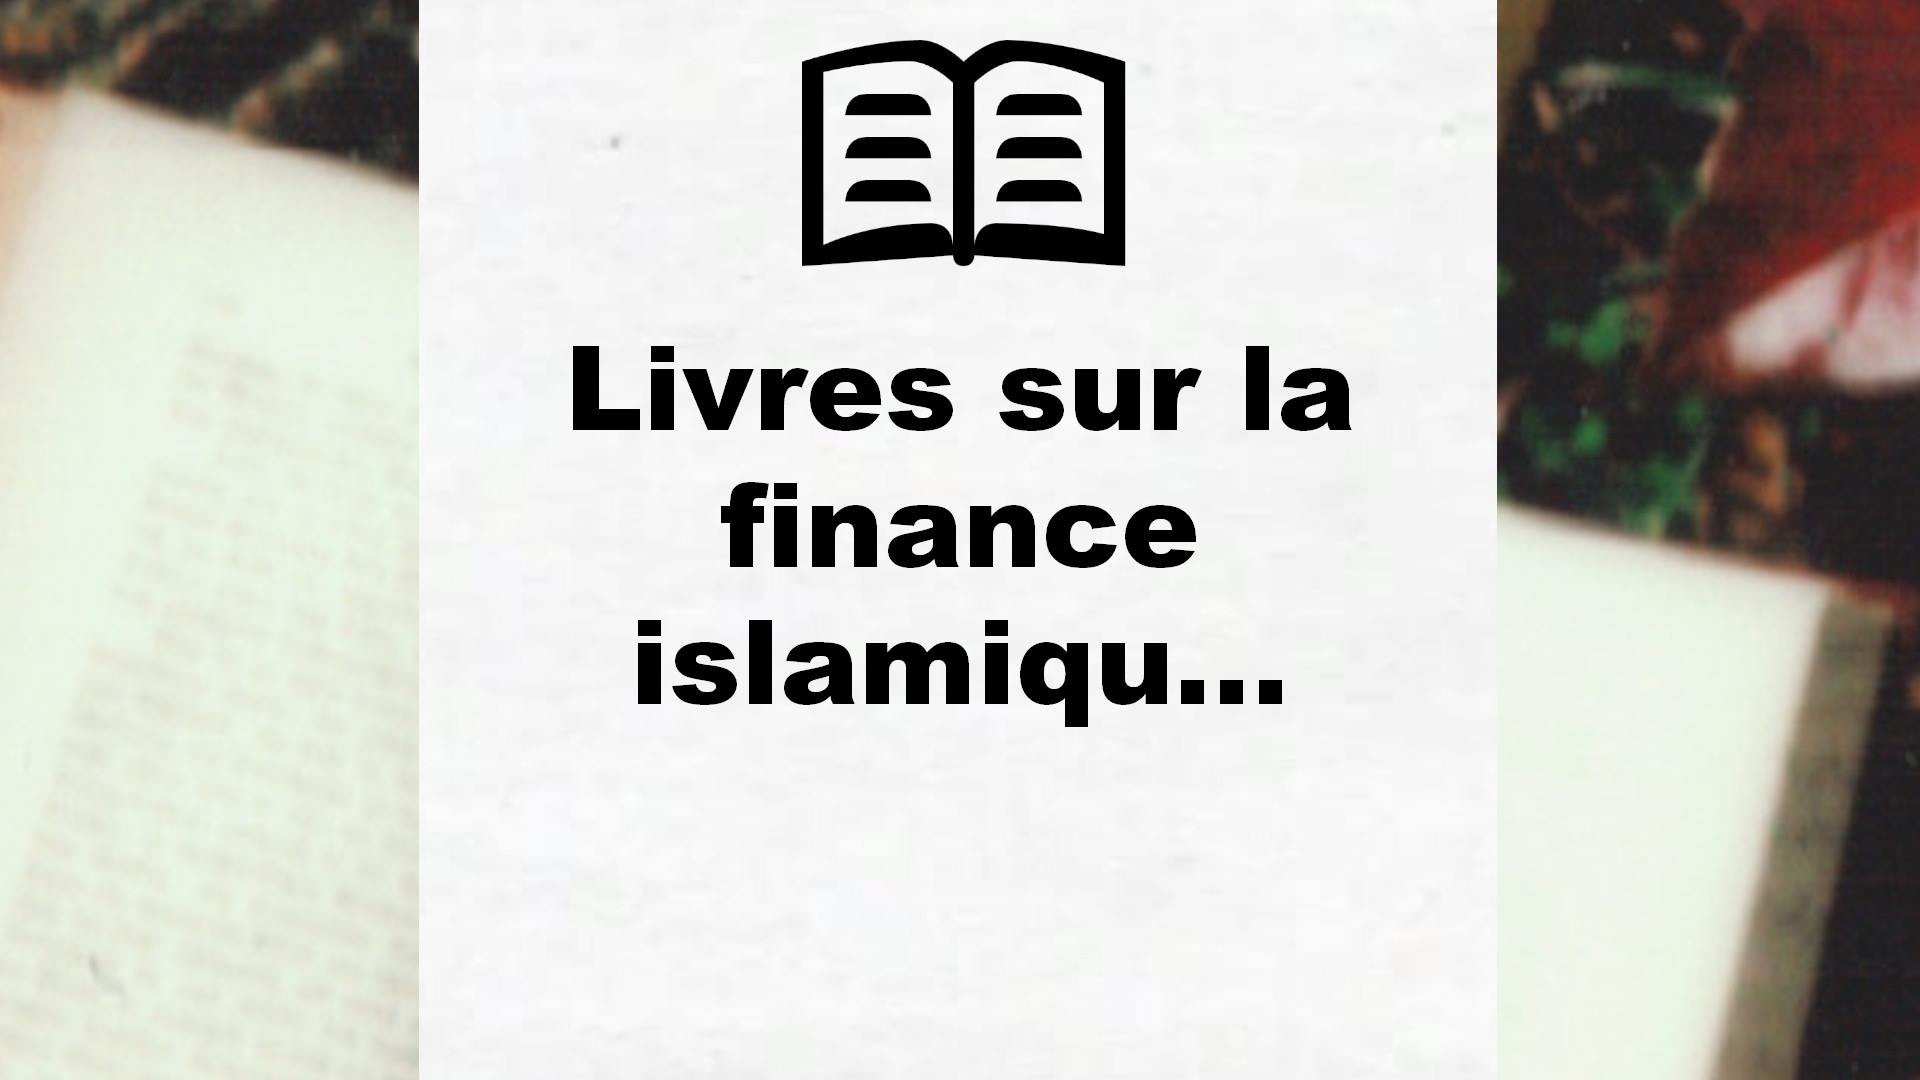 Livres sur la finance islamique